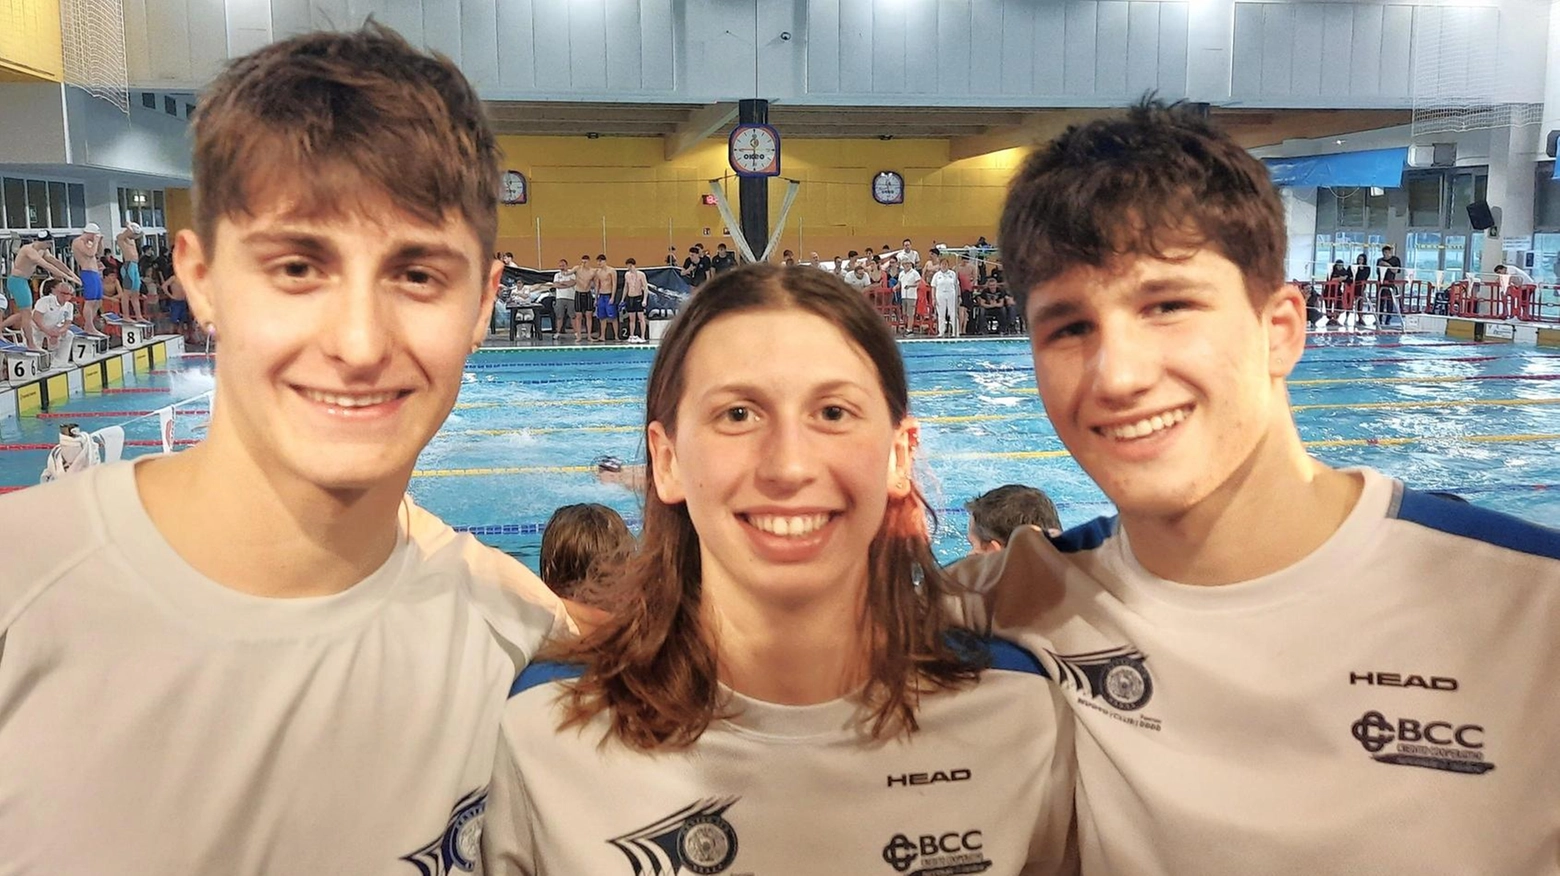 Tante soddisfazioni per il Nuoto Sub Faenza al campionato regionale